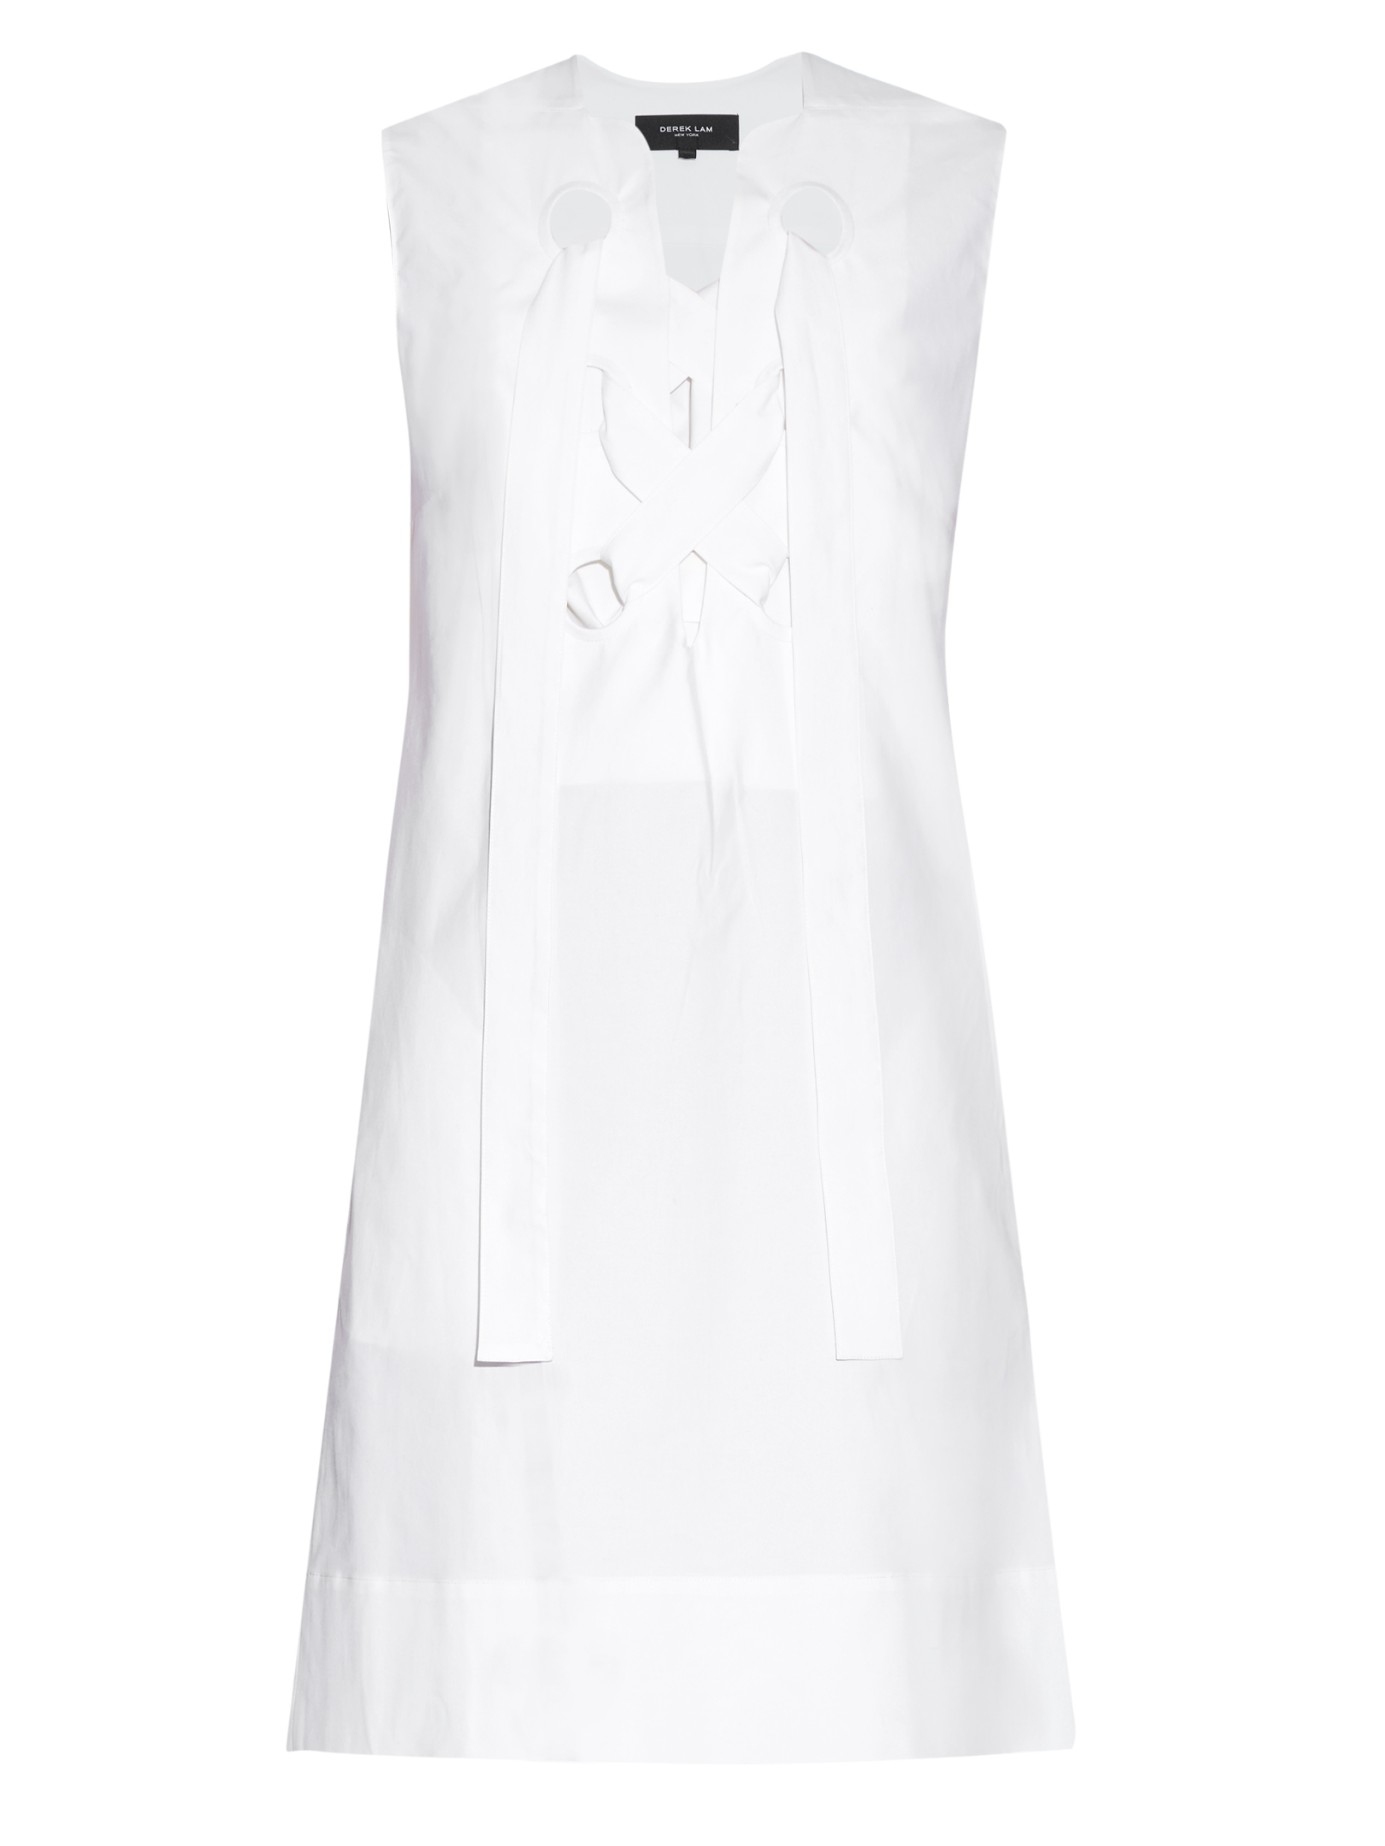 white cotton shift dress